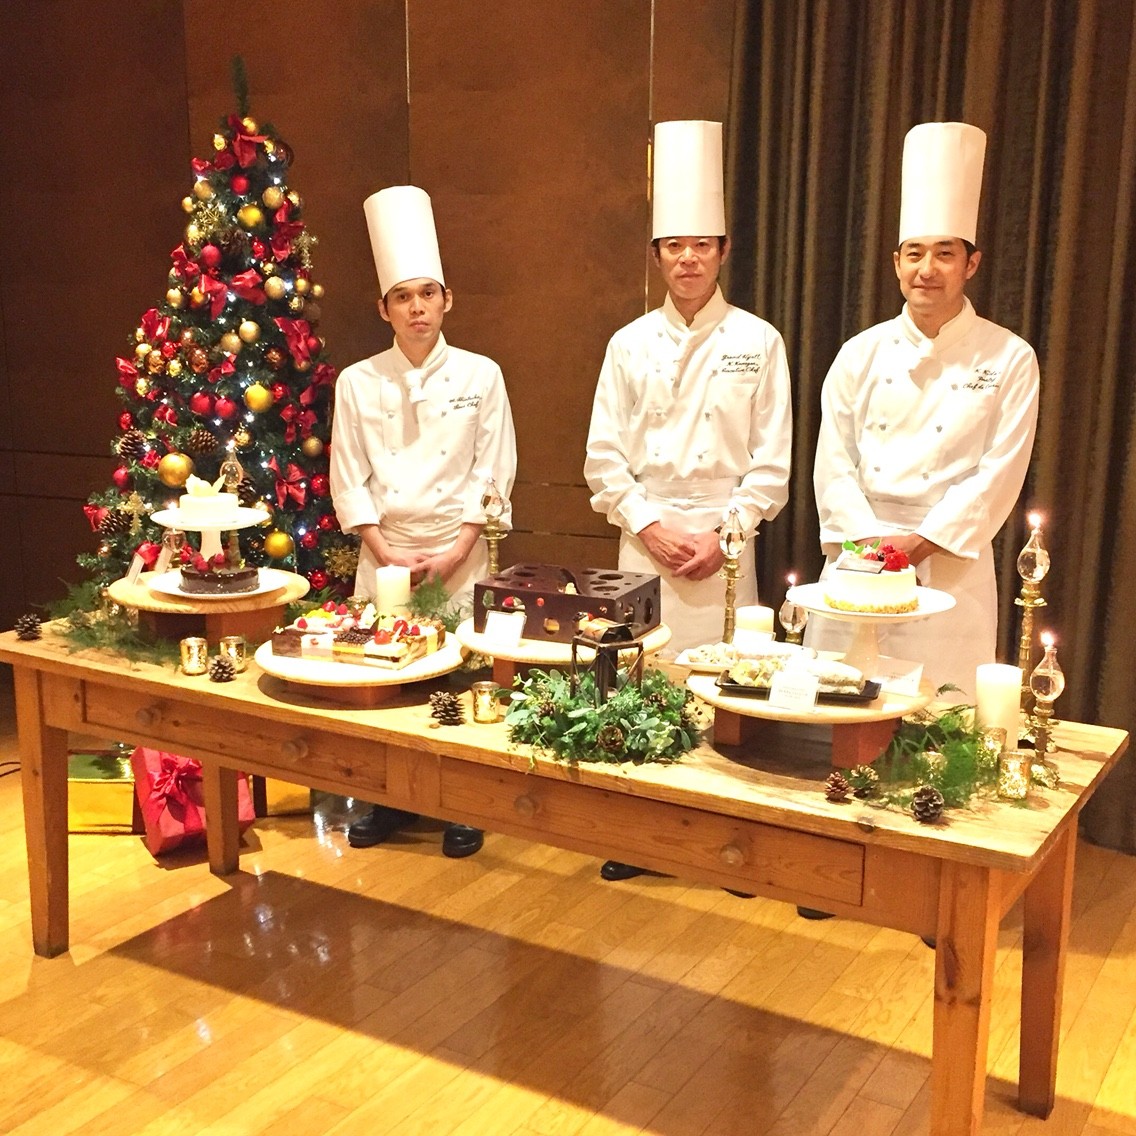 グランドハイアット福岡のクリスマスケーキ16の予約開始 開業周年記念の種類のプレミアムケーキや2人向けサイズも フクオカーノ